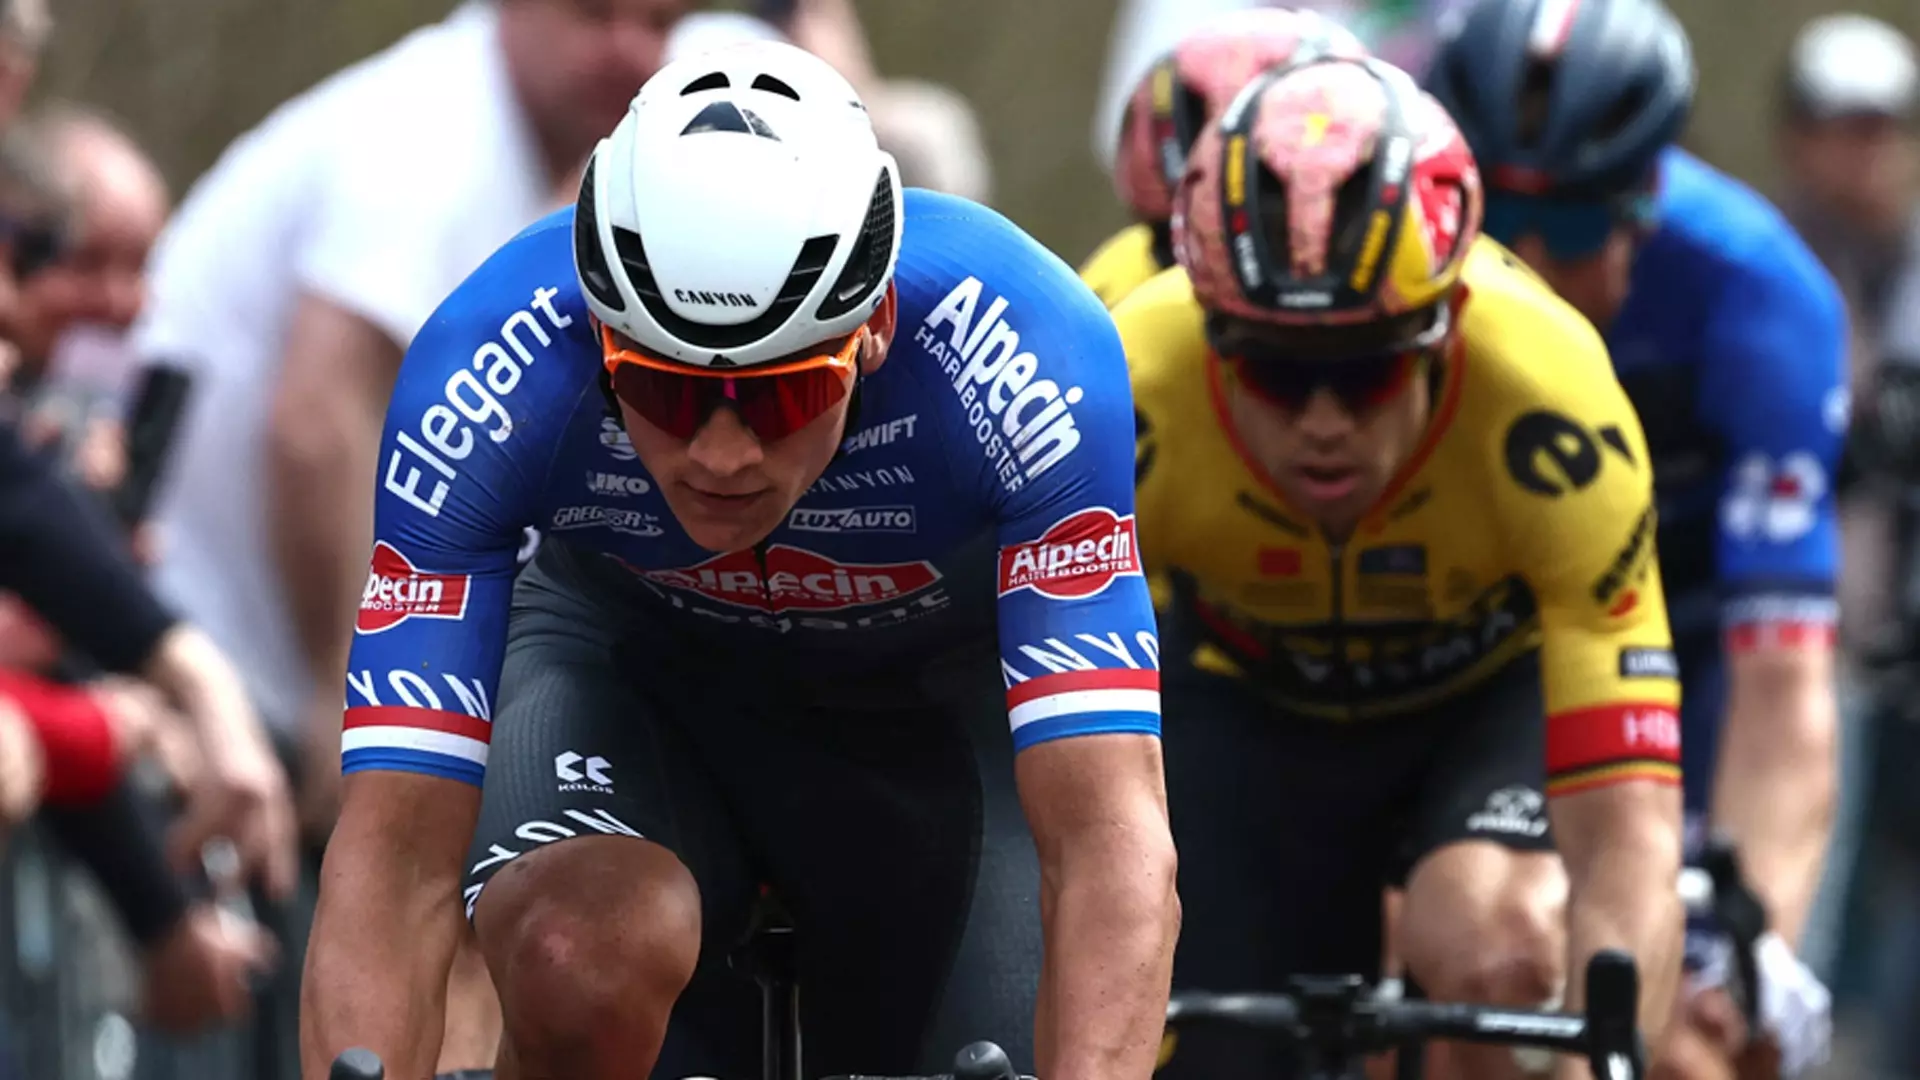 Parigi-Roubaix, vince Van der Poel: “Gambe e fortuna”